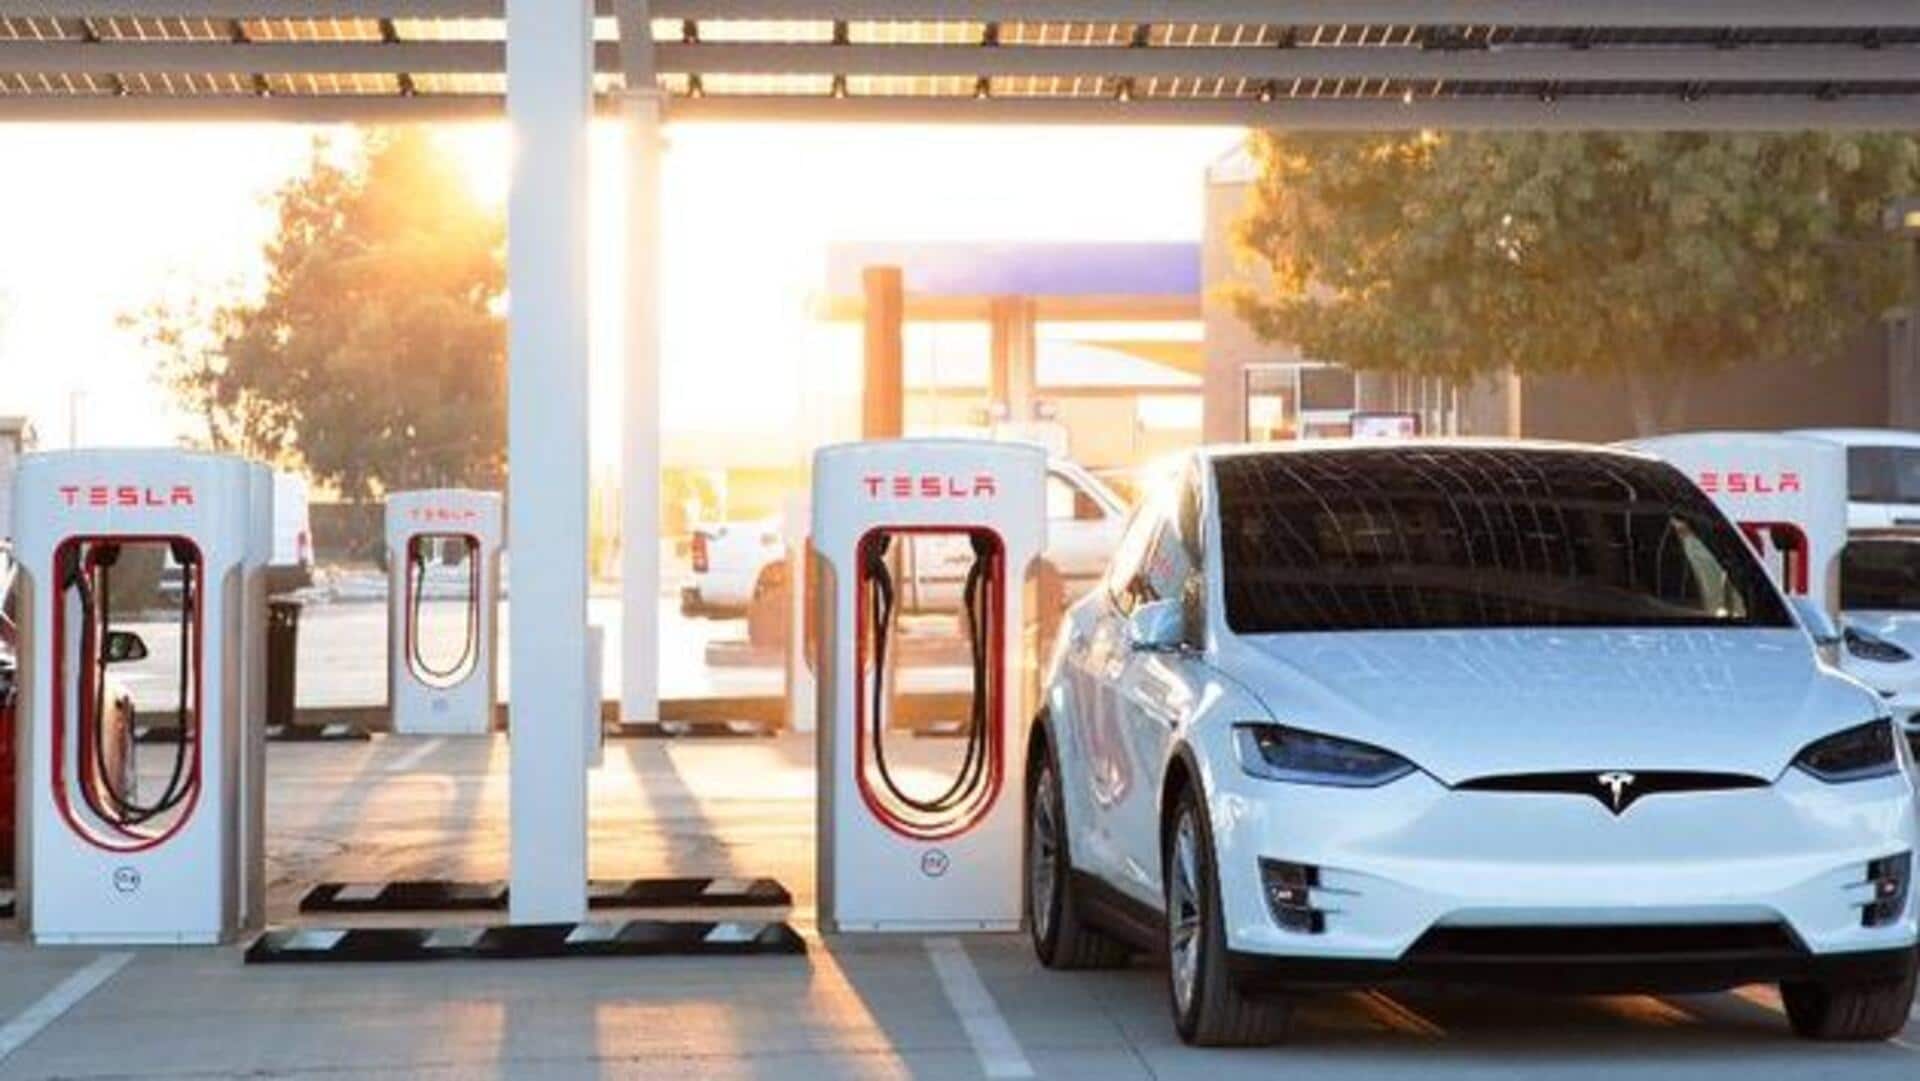 वोल्वो ने चार्जिंग तकनीक के लिए टेस्ला से मिलाया हाथ, 2025 की कारों में होगी इस्तेमाल  